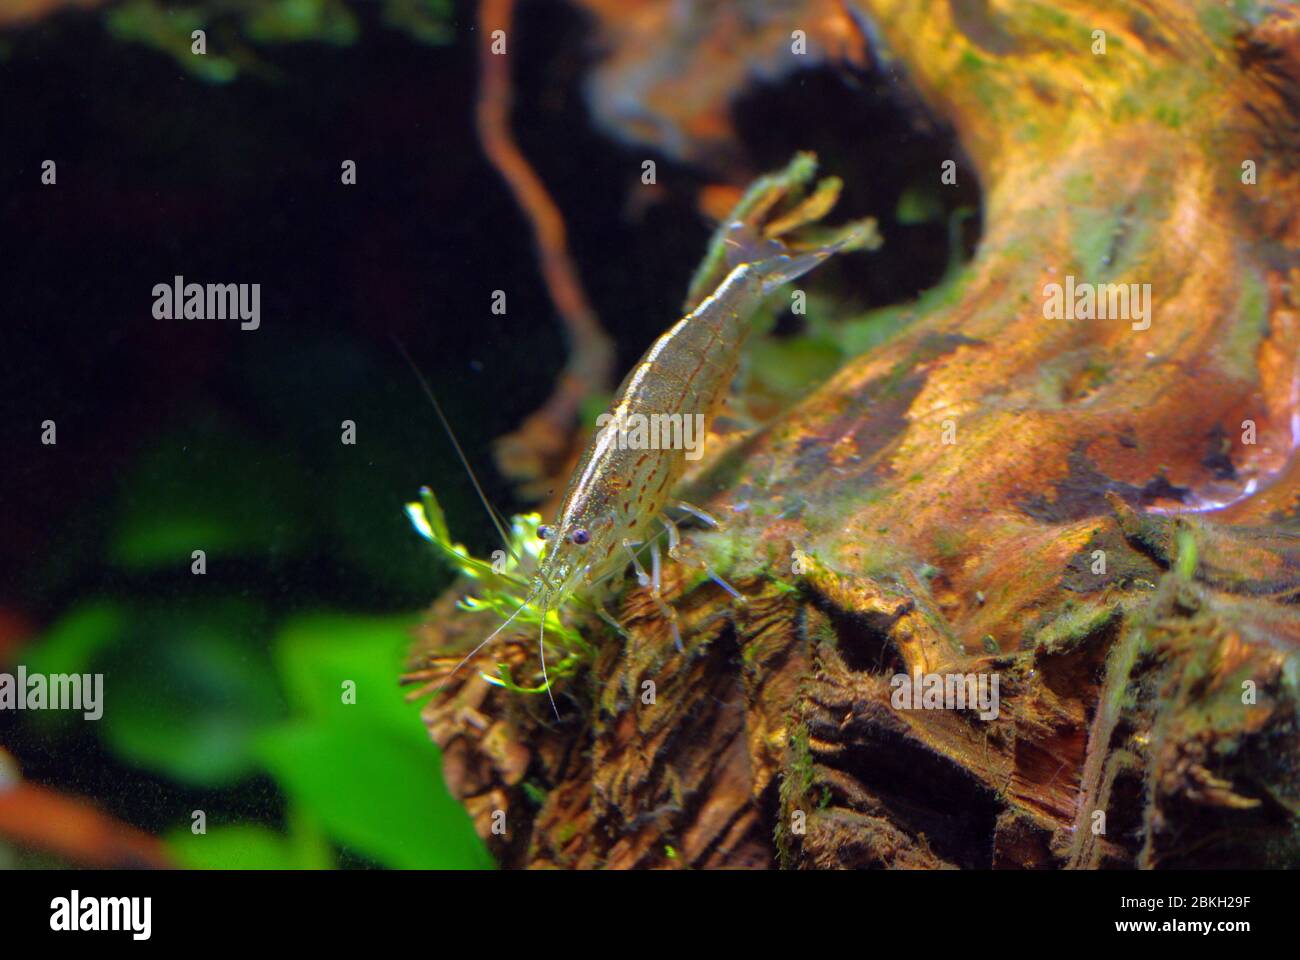 Yamato Nuba Ebi or Amano shrimp, Caridina multidentata Stock Photo